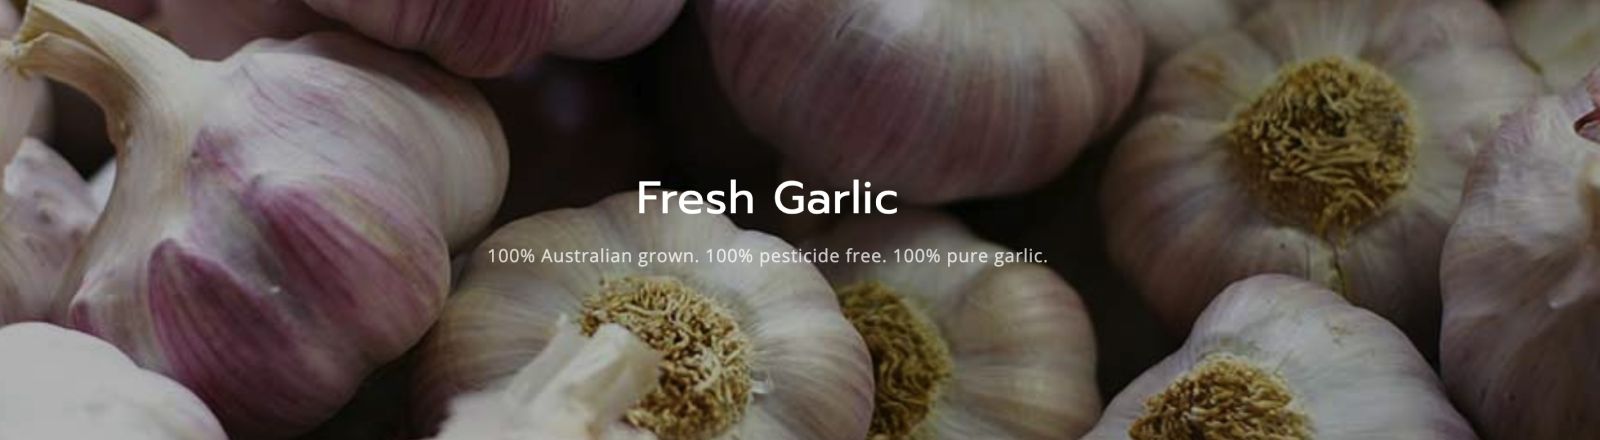 KI Garlic Image